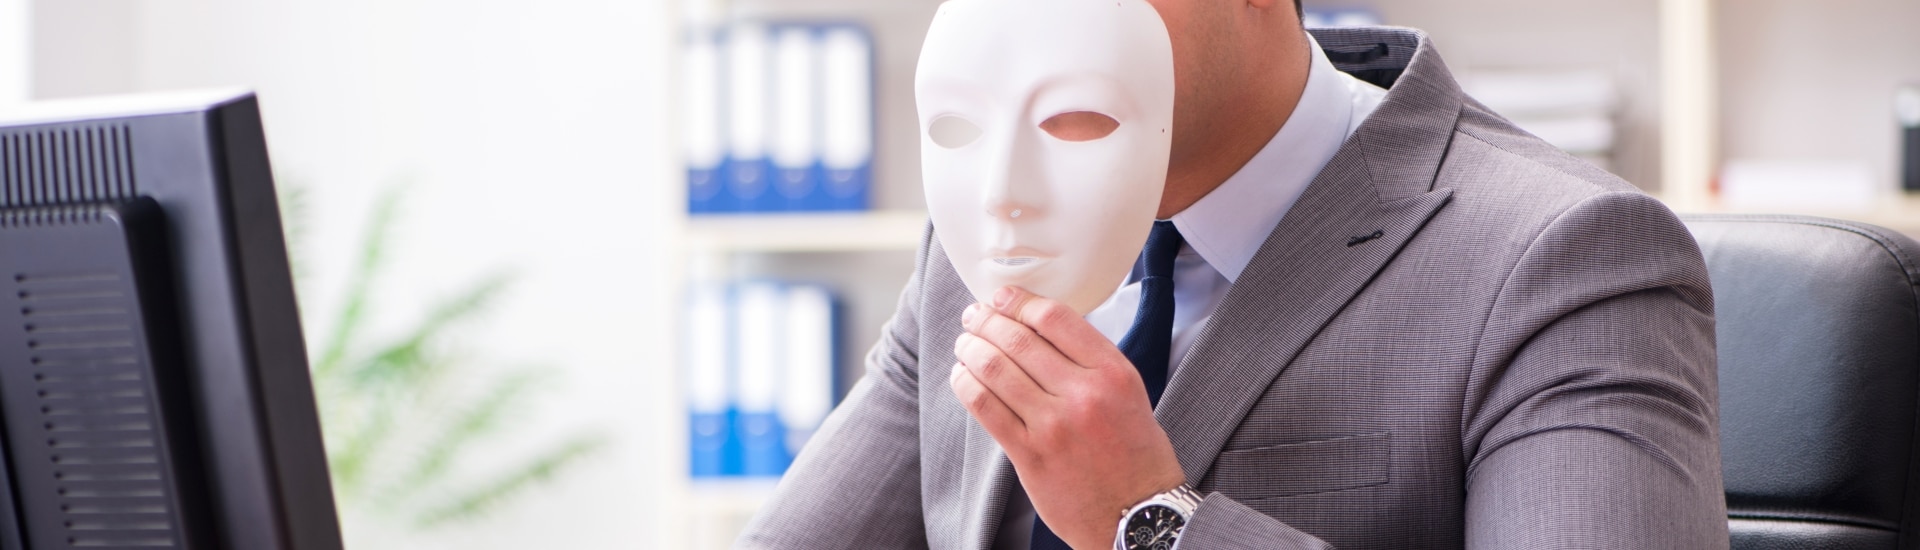 Fraude empresarial: ¿qué es y como reconocerlo?